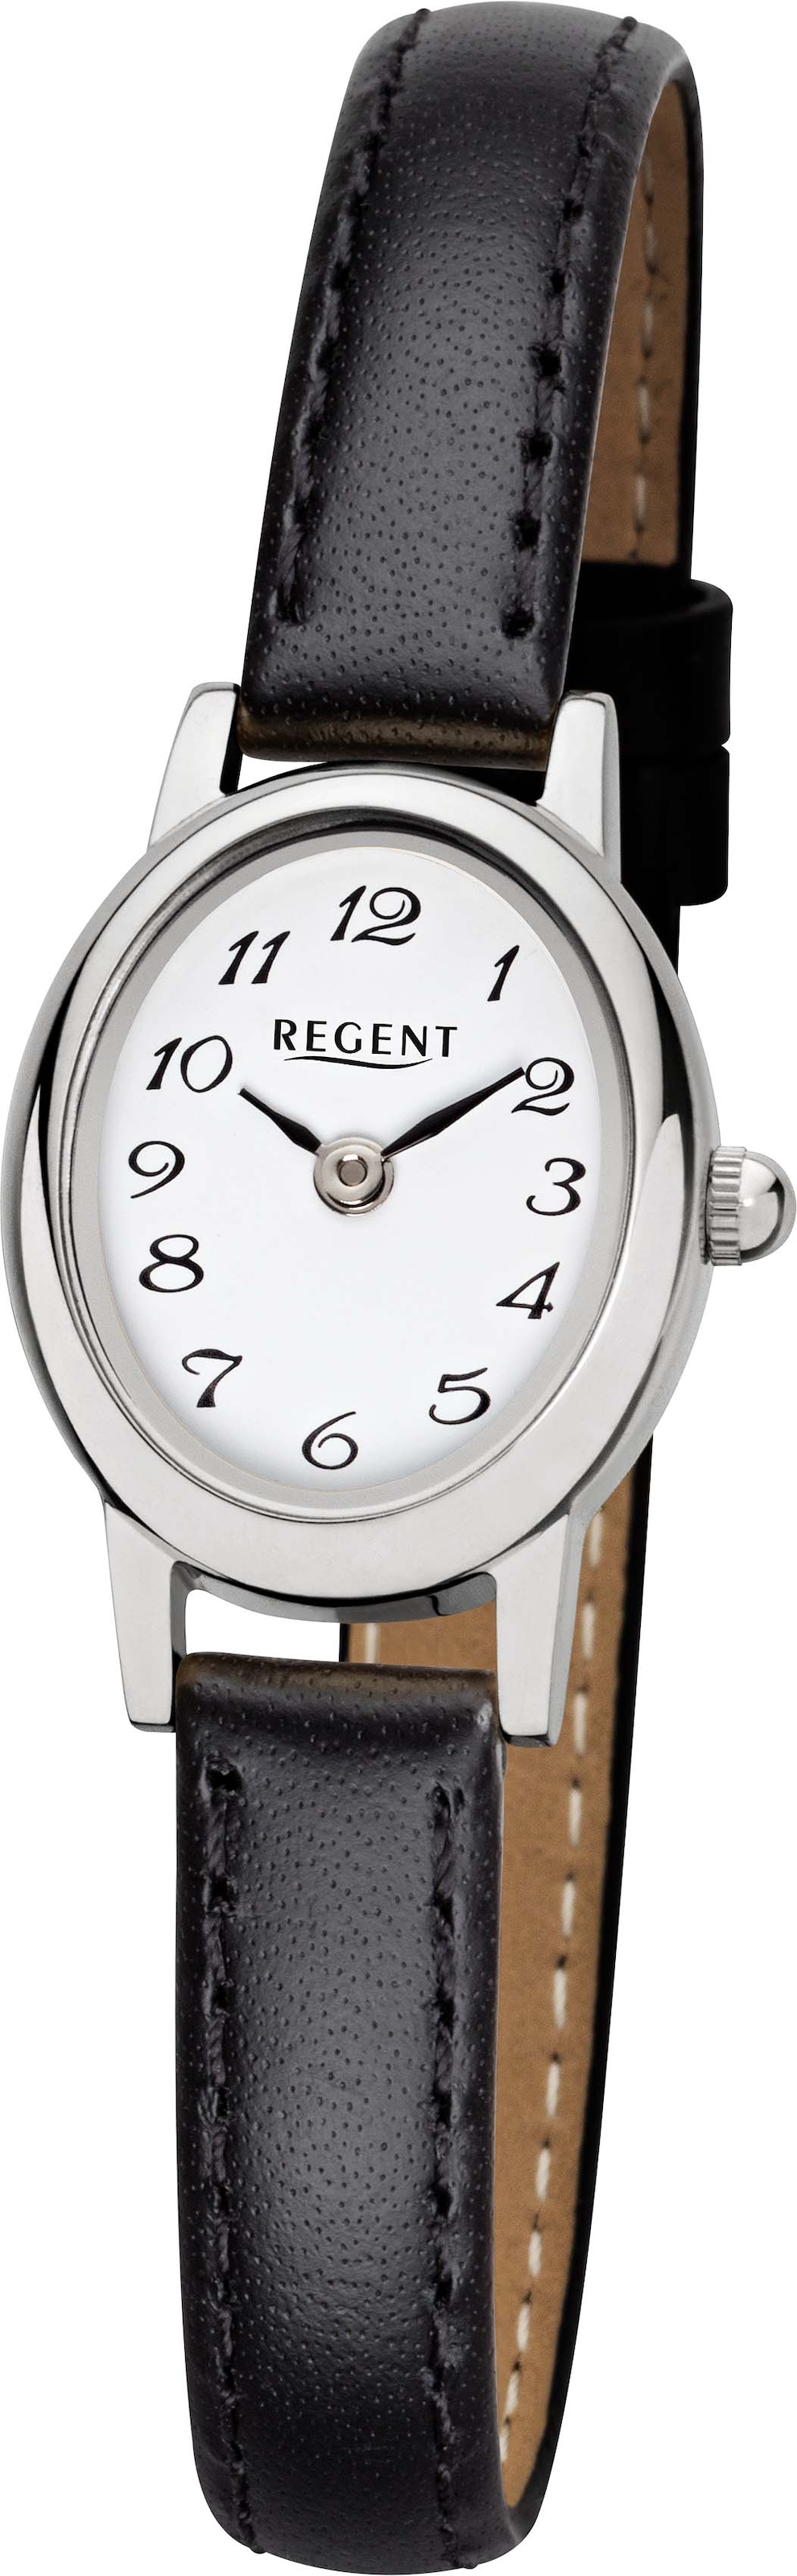 Regent Quarzuhr »F-1409 - 3272.40.19«, Armbanduhr, Damenuhr, Mineralglas